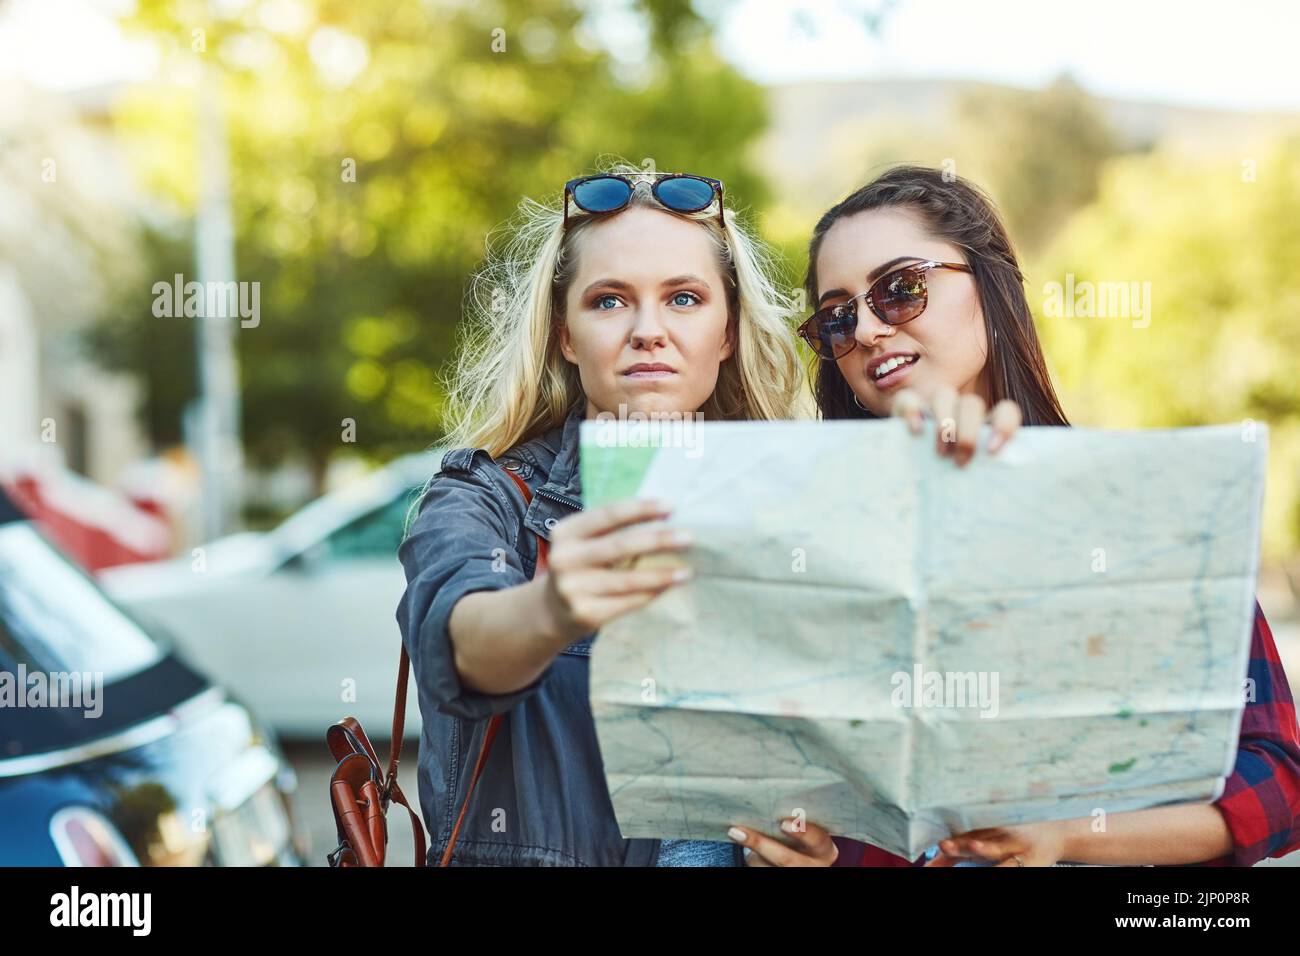 Sich zu verlaufen ist Teil der Reise. Zwei schöne Freundinnen, die auf einer Karte nach Wegbeschreibungen in der Stadt suchen. Stockfoto